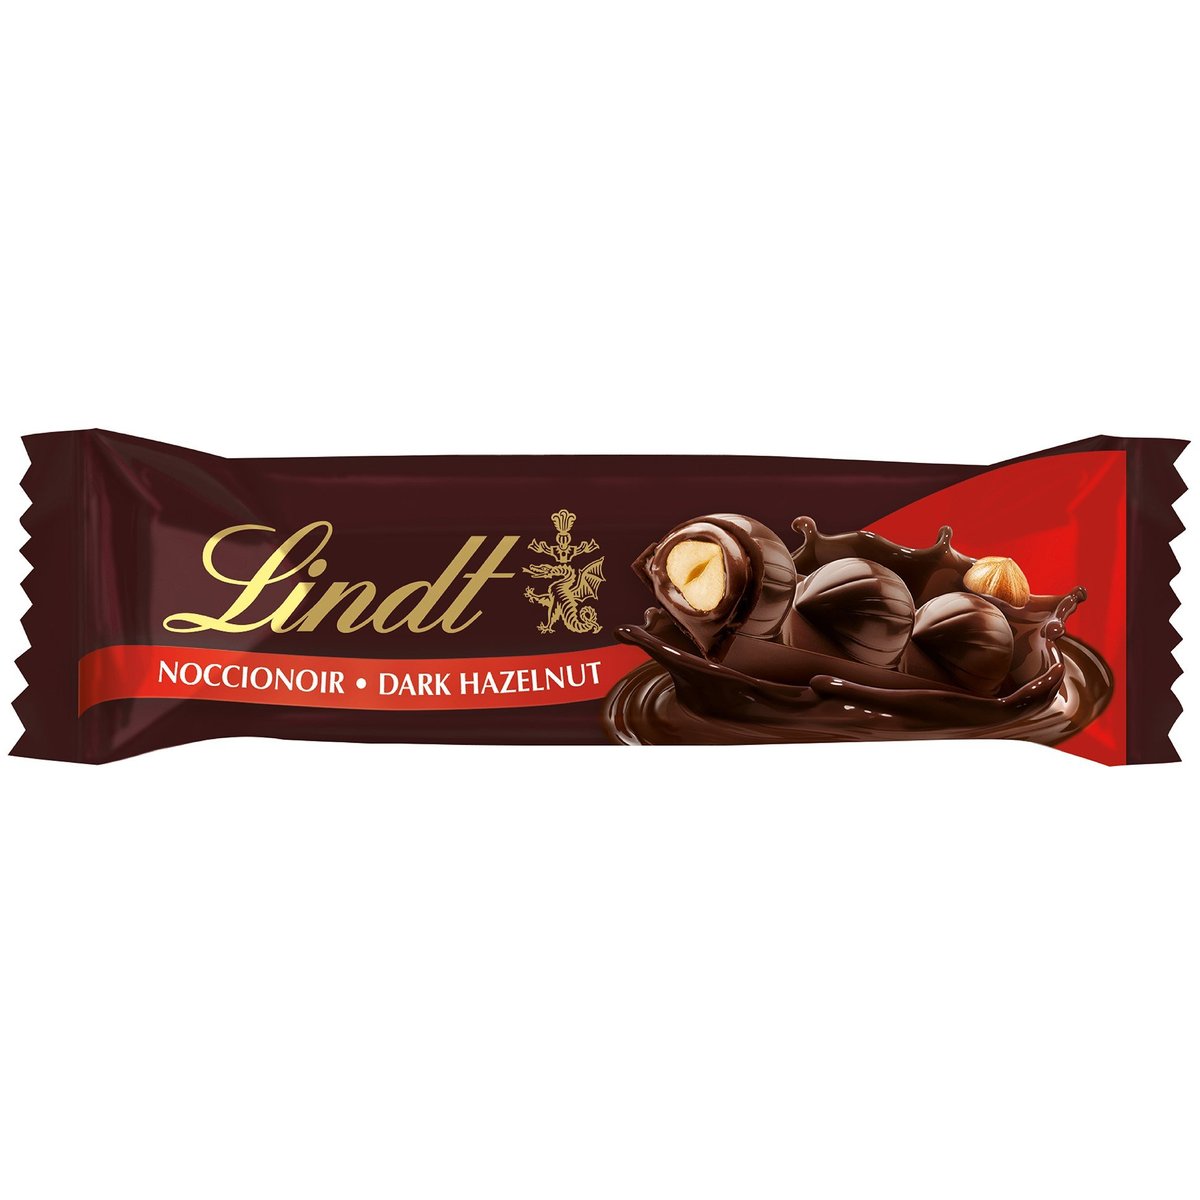 Lindt Noccionoir tyčinka z hořké čokolády s oříšky